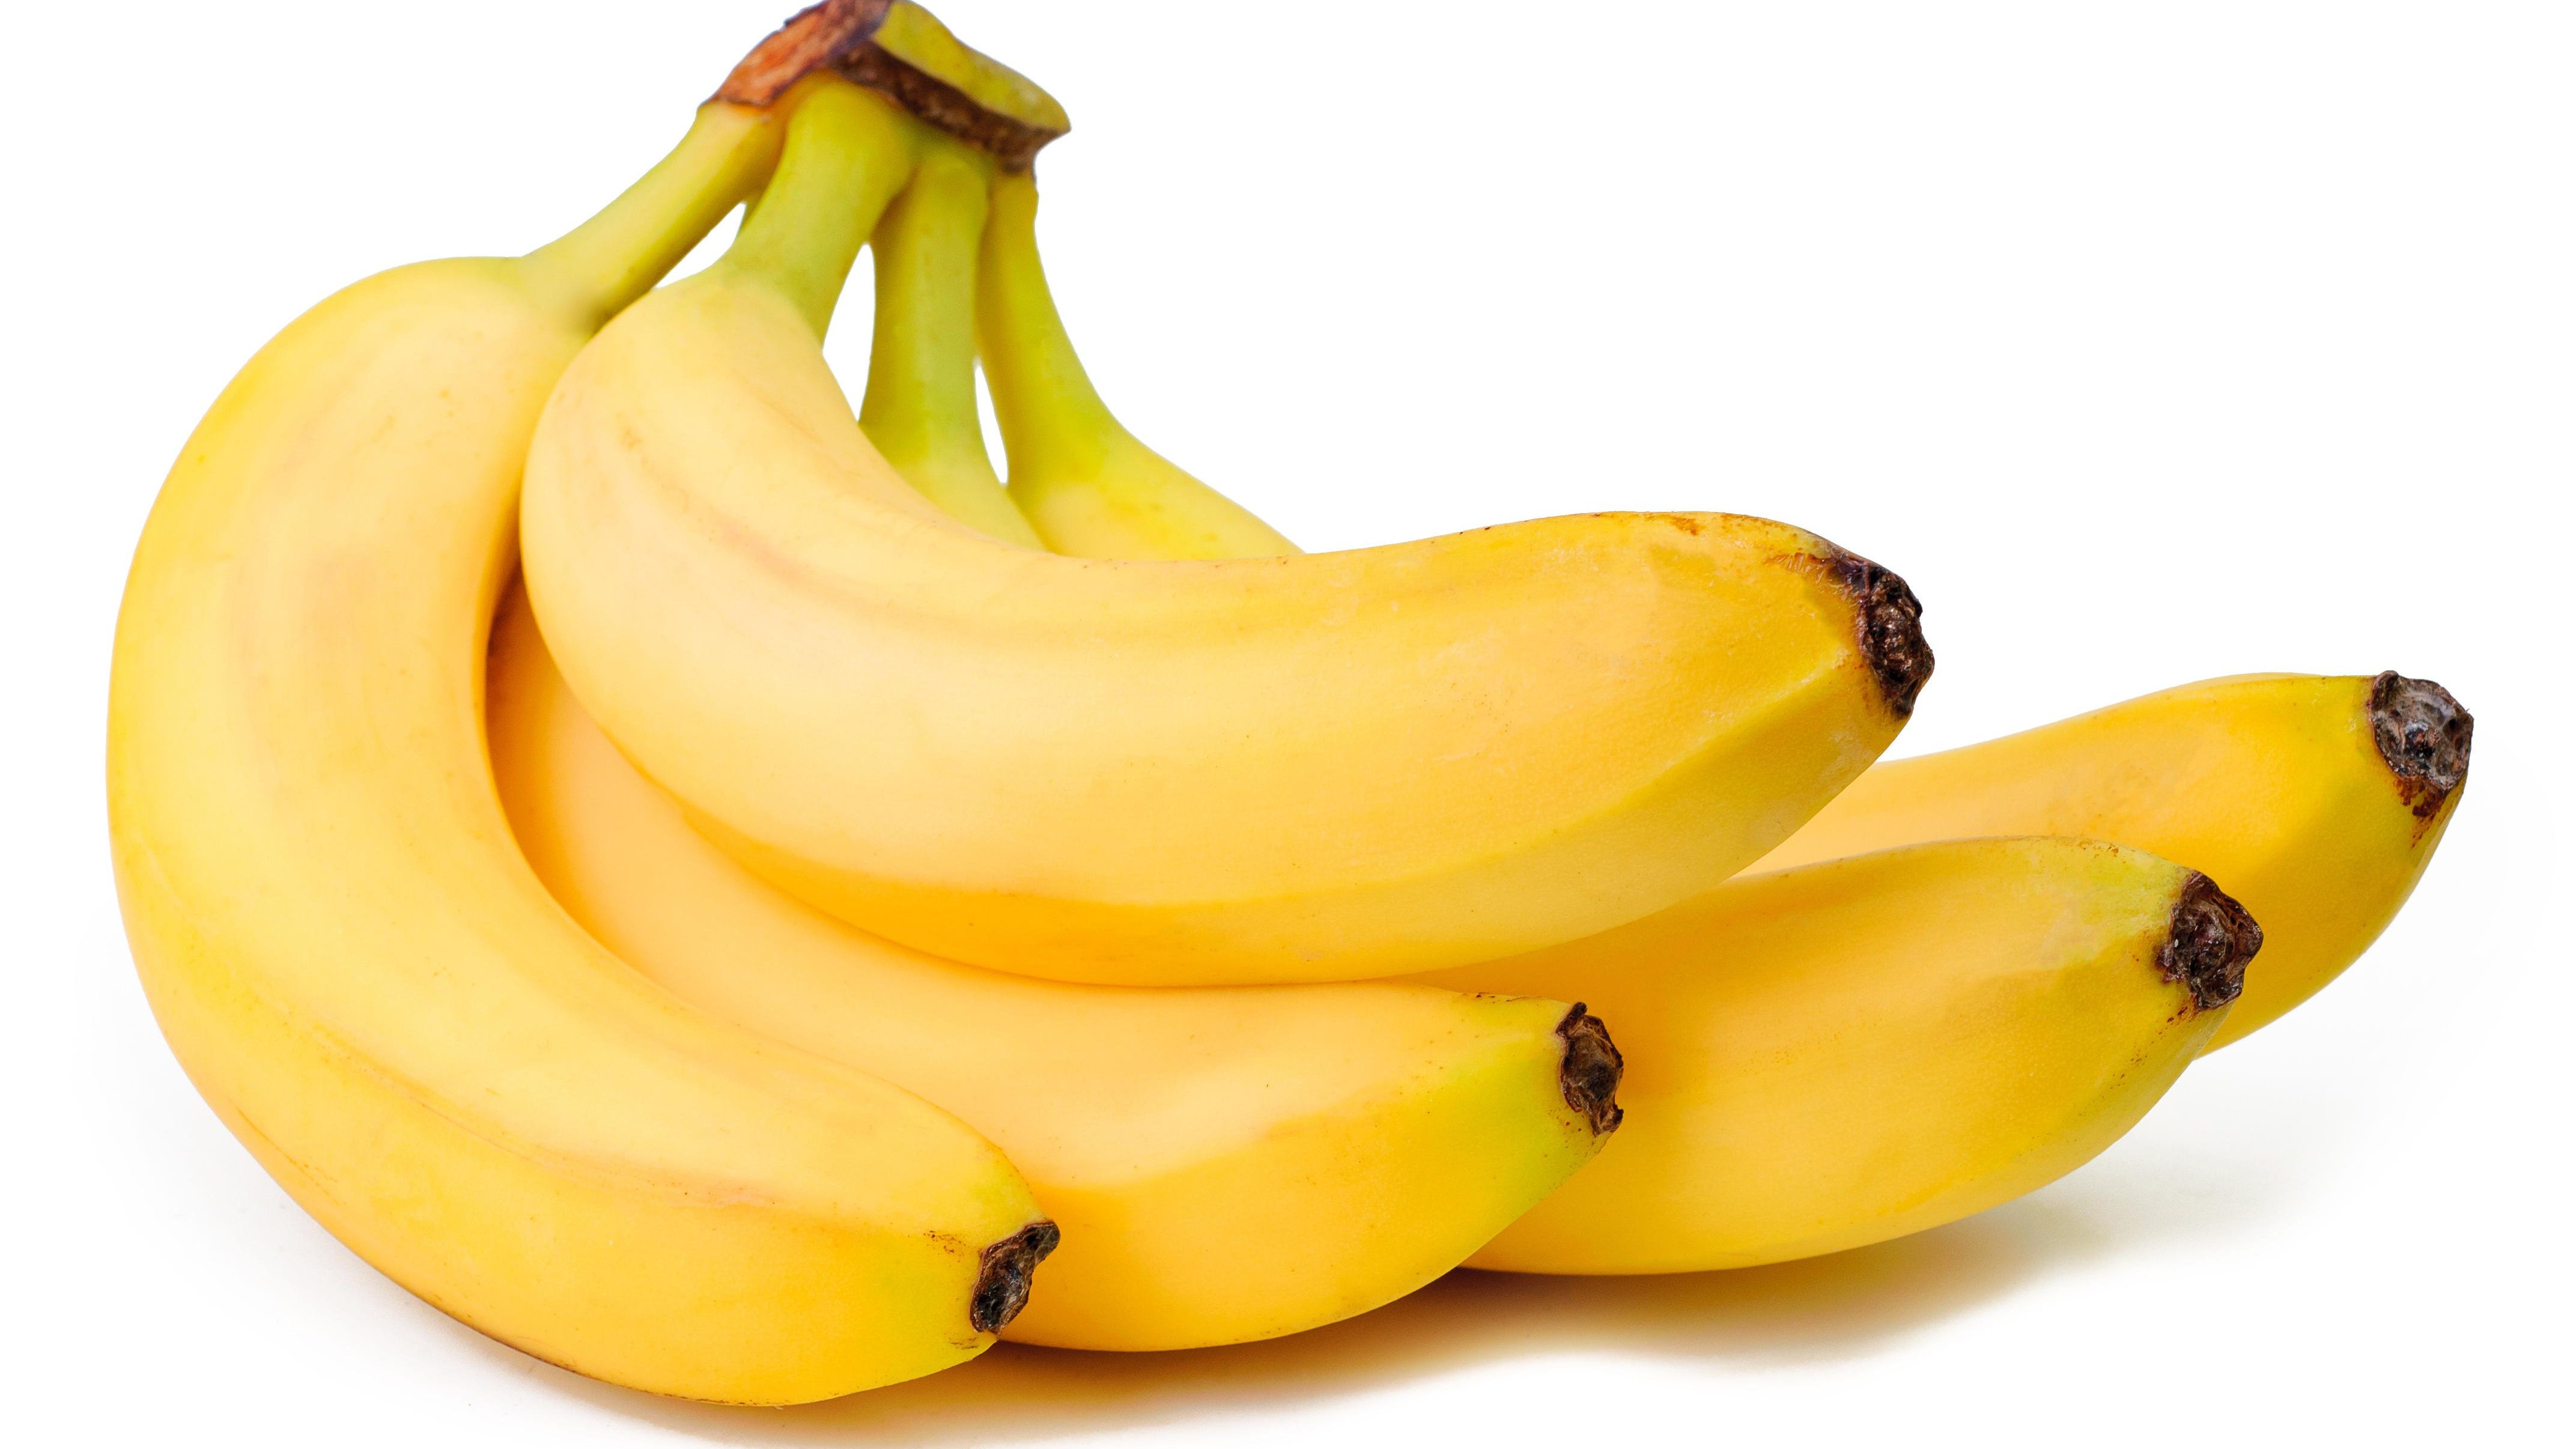 Banana Fruits Images - KibrisPDR